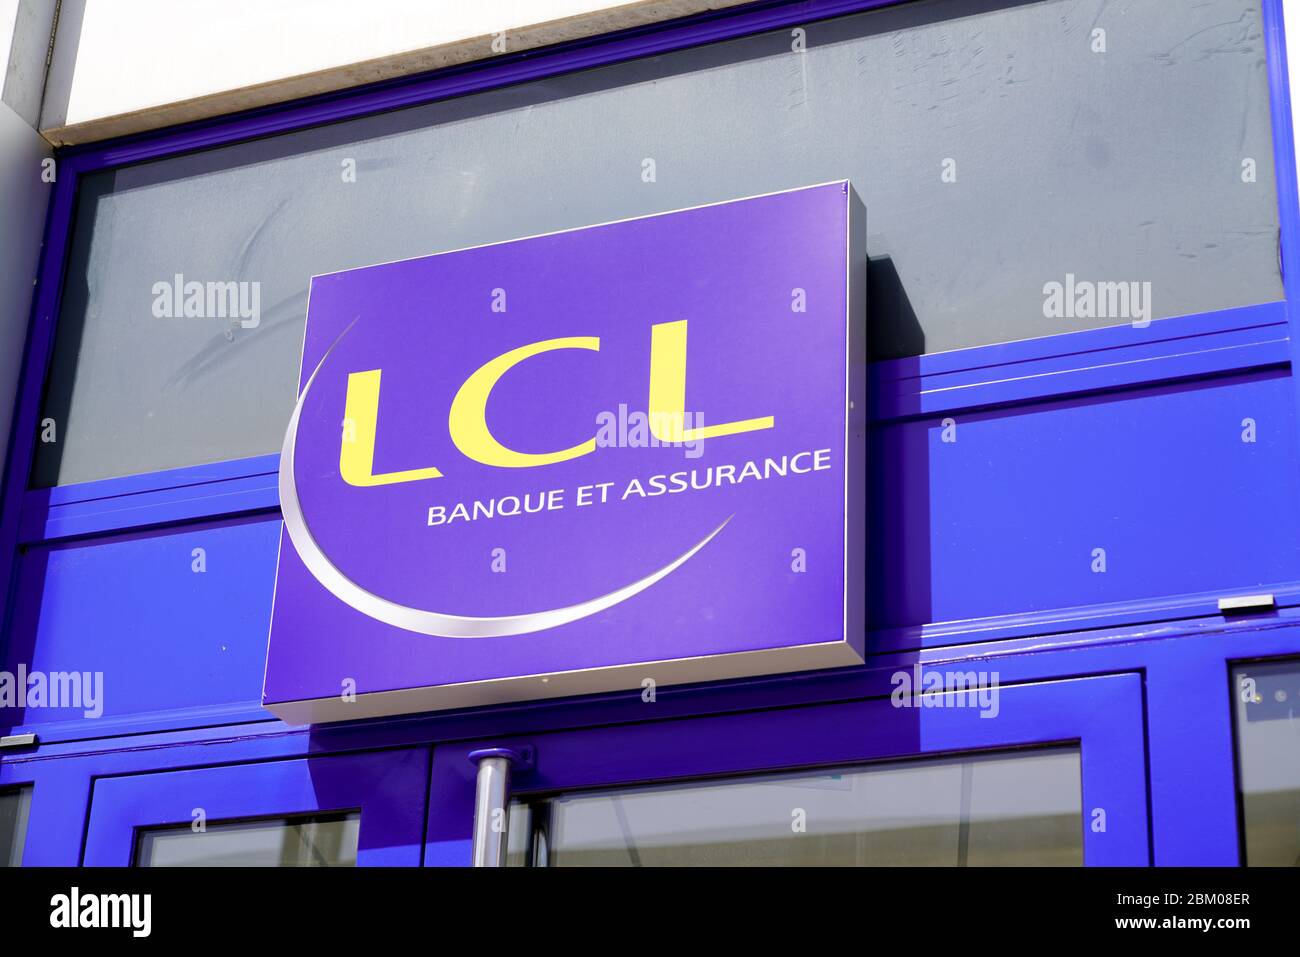 Bordeaux , Aquitaine / France - 05 04 2020 : lcl logo french sign brand le credit Lyonnais Banque et assurance blue bank signage Stock Photo